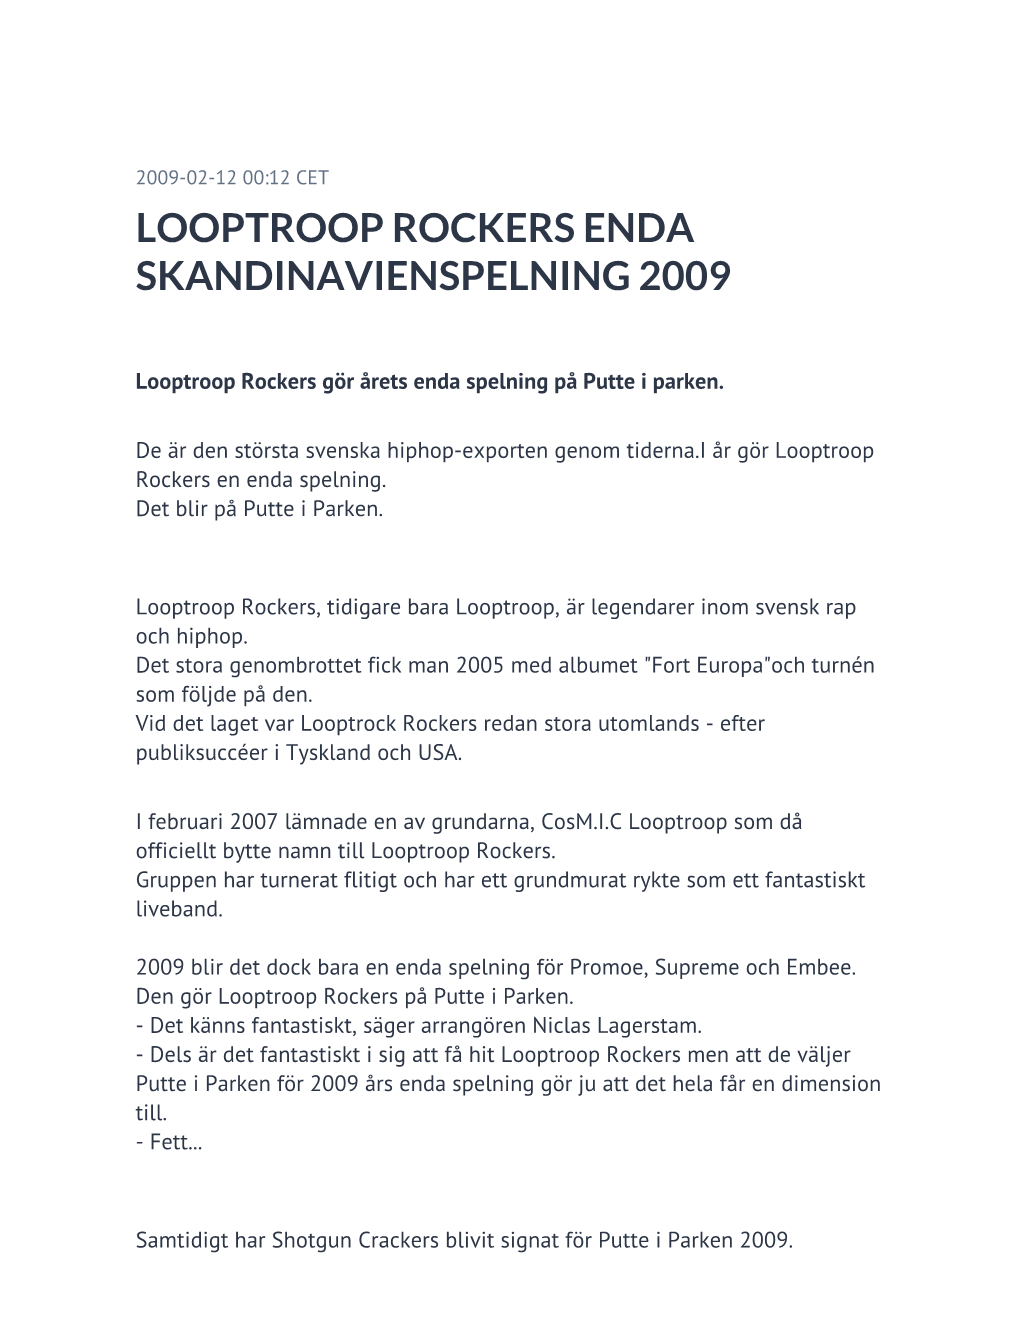 Looptroop Rockers Enda Skandinavienspelning 2009